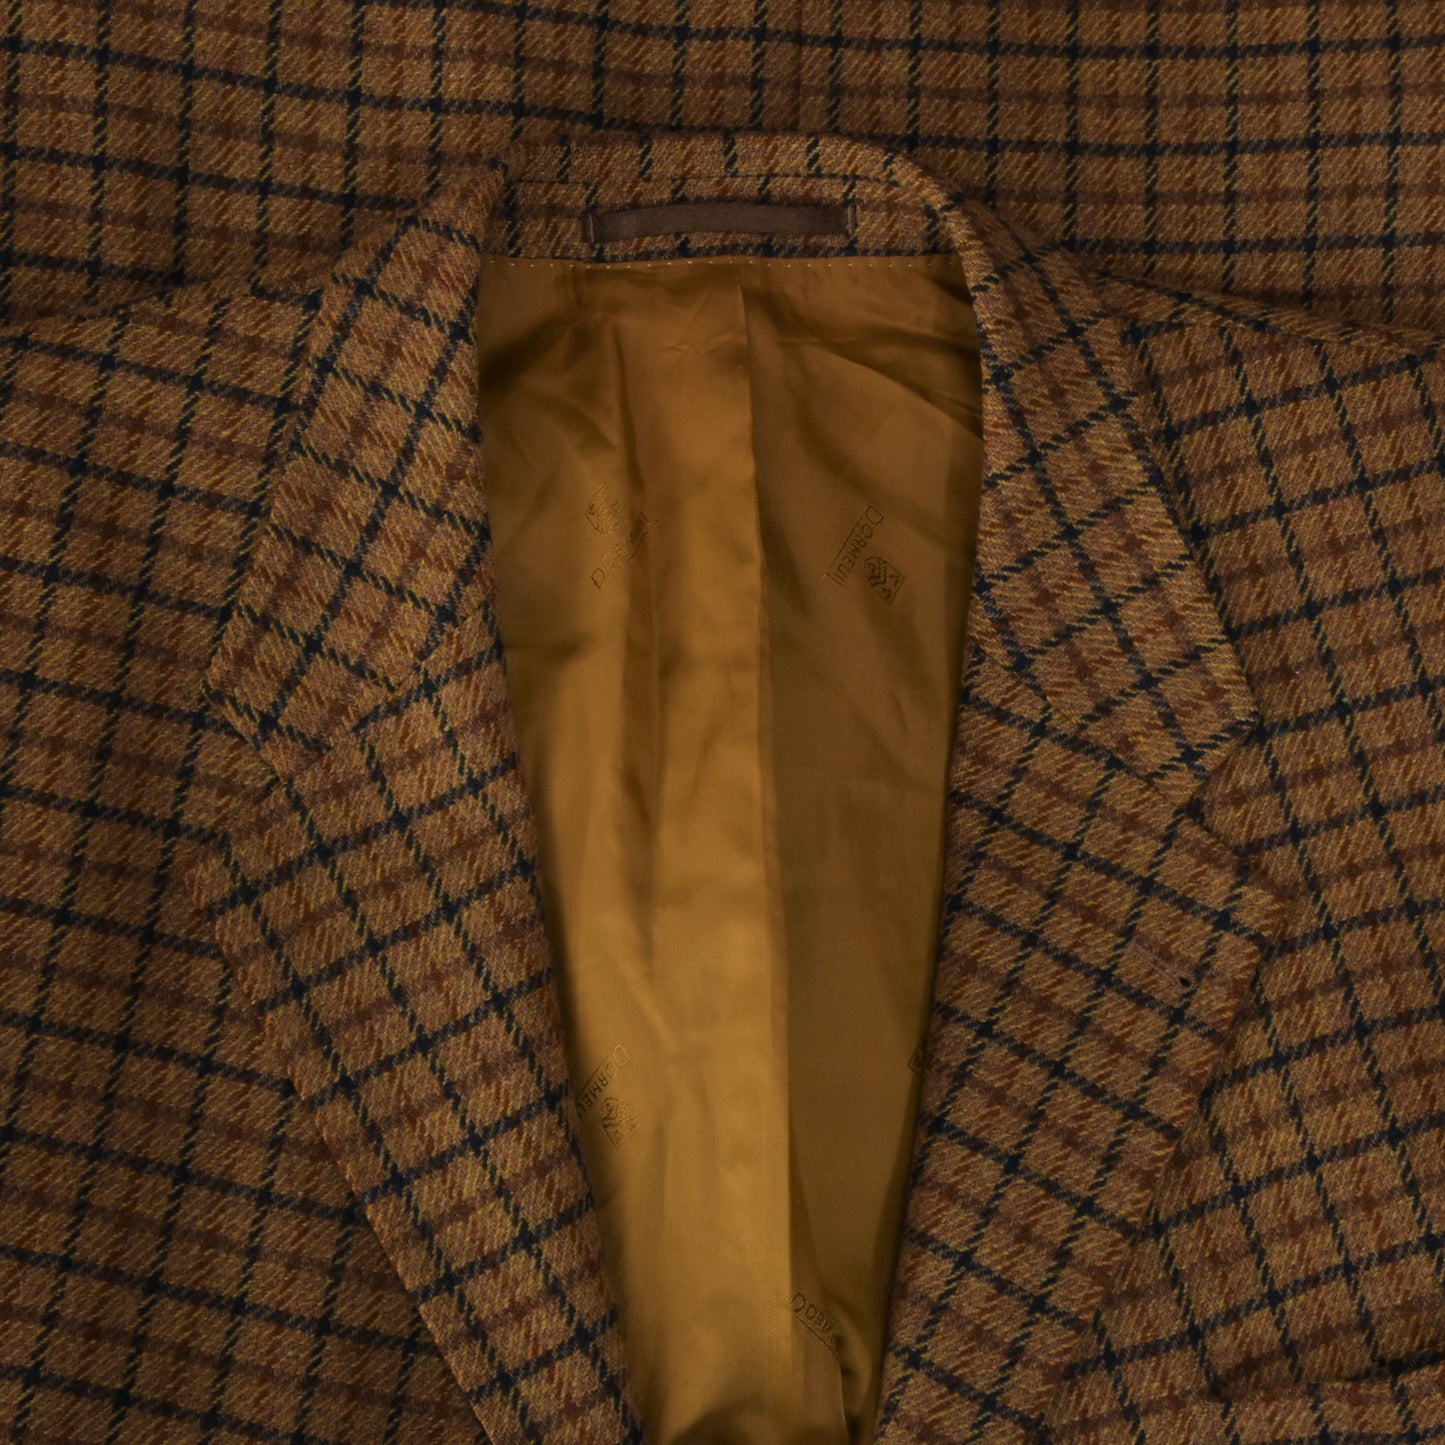 Dormeuil Sakko Wolle - Fairway Cloth